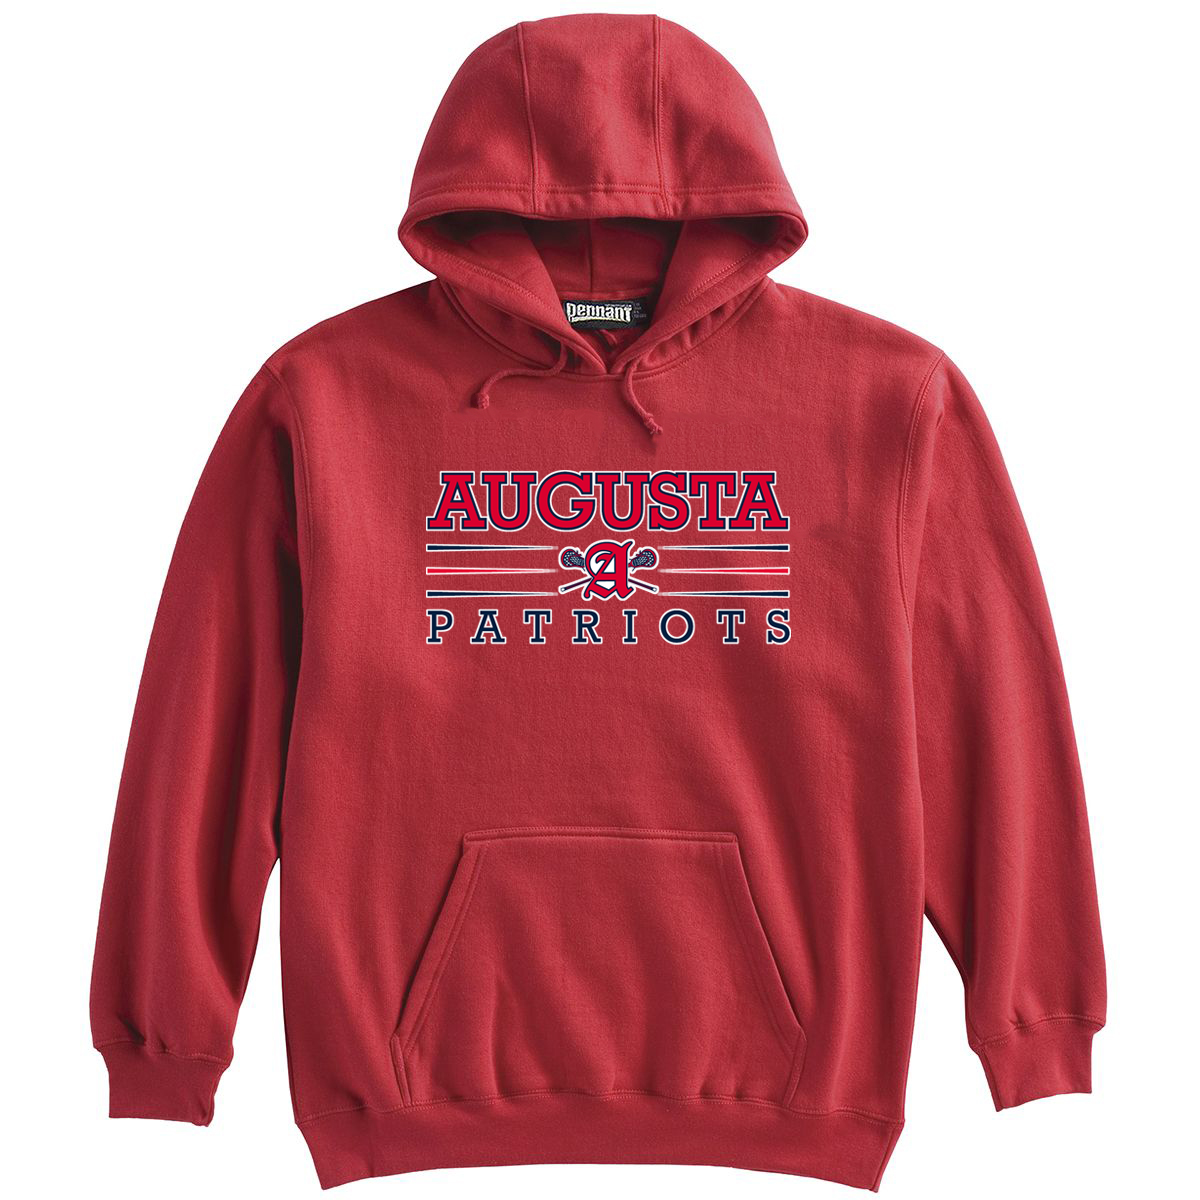 Augusta Patriots Red Sweatshirt